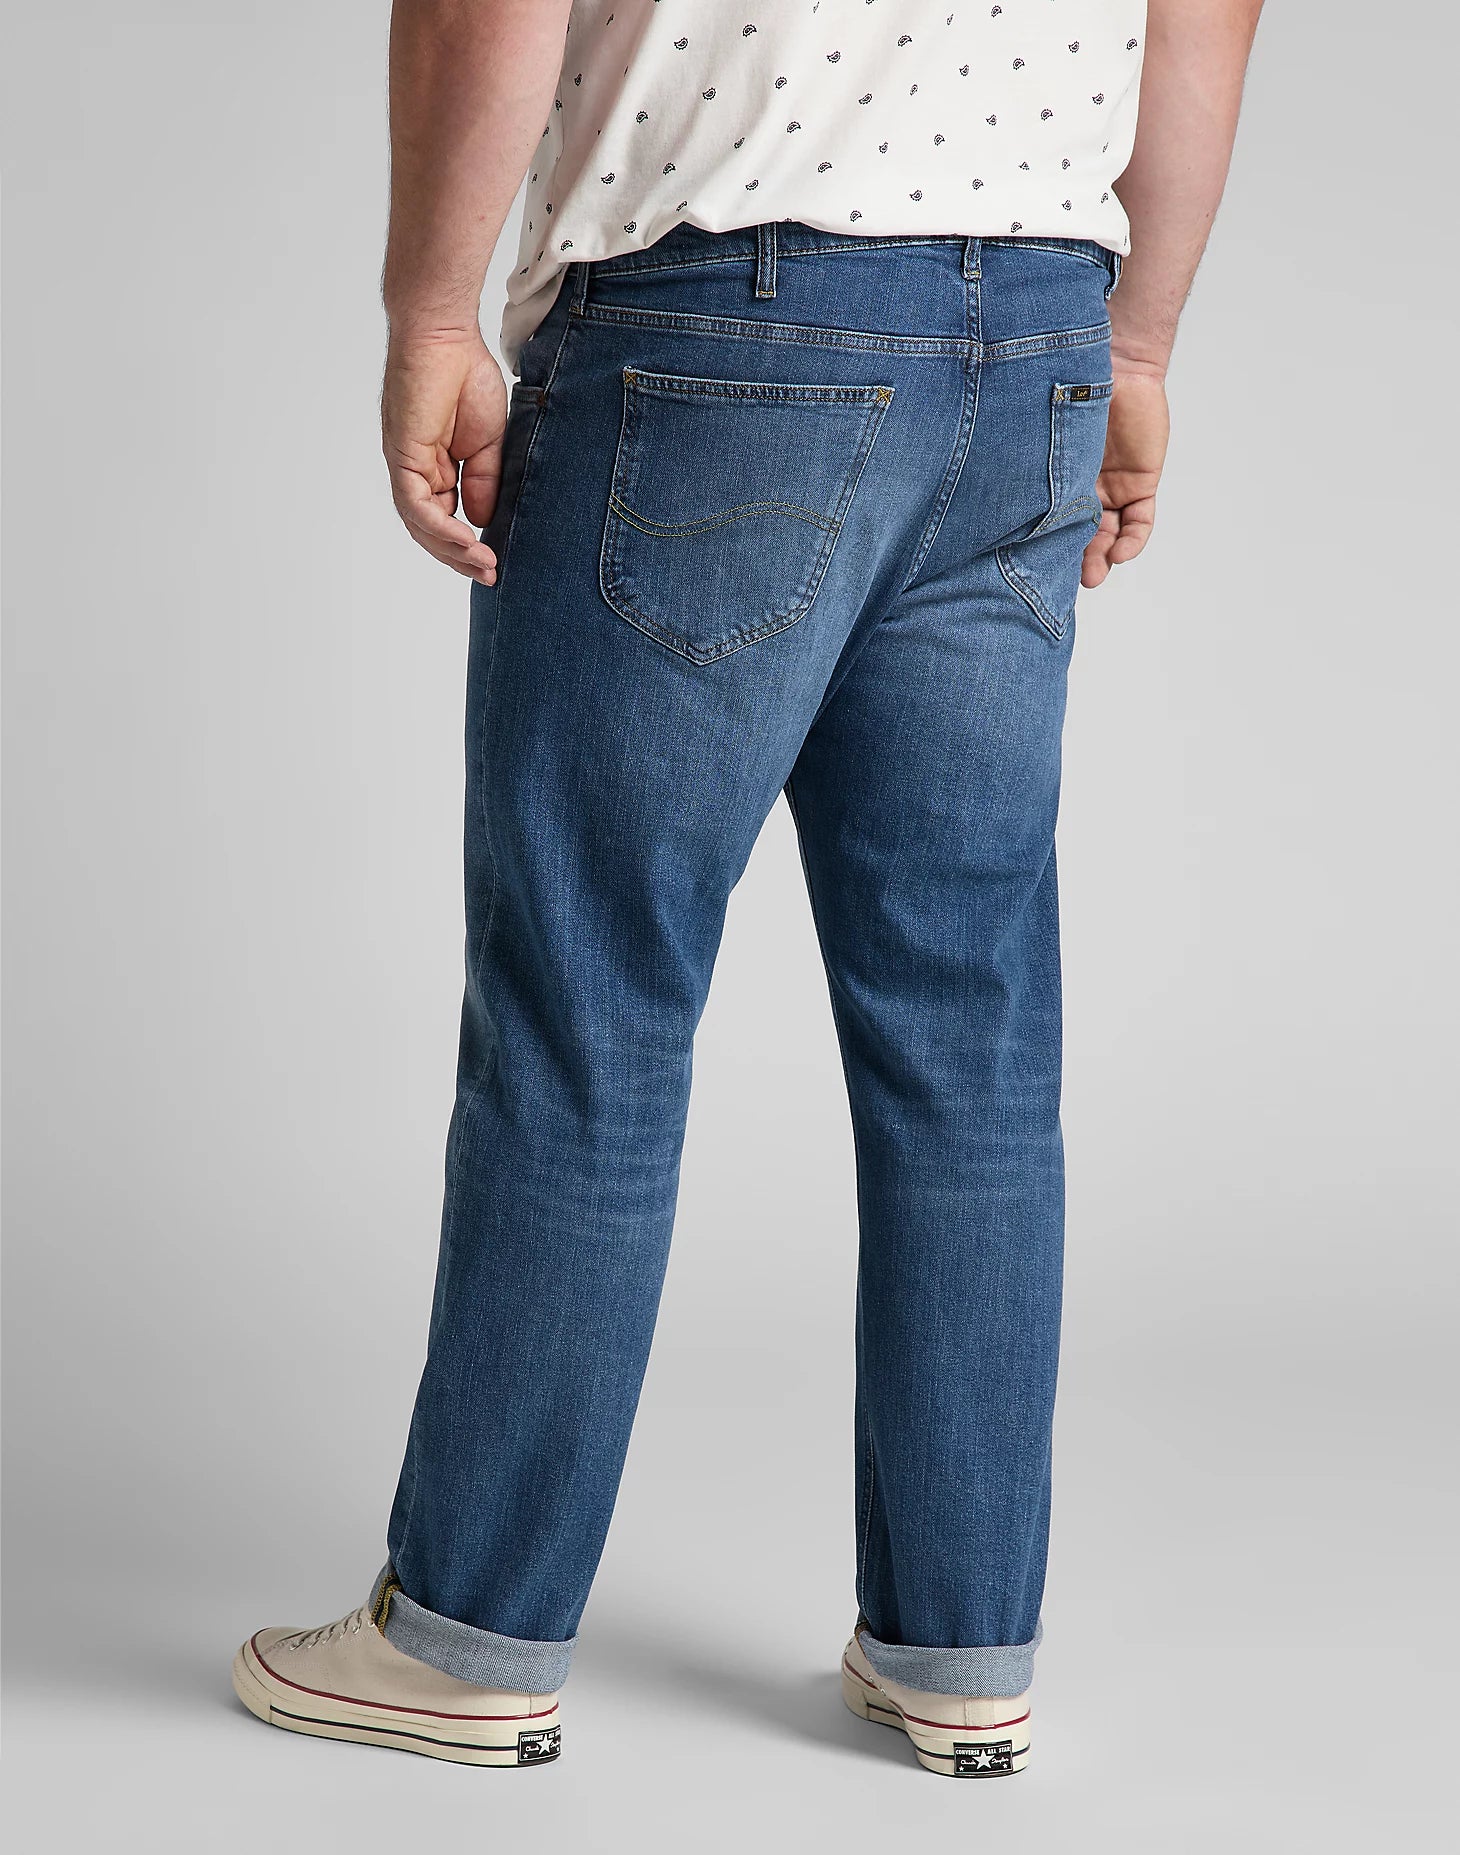 Lee Daren Zip Fly Reg Straight Jeans - Dark Freeport